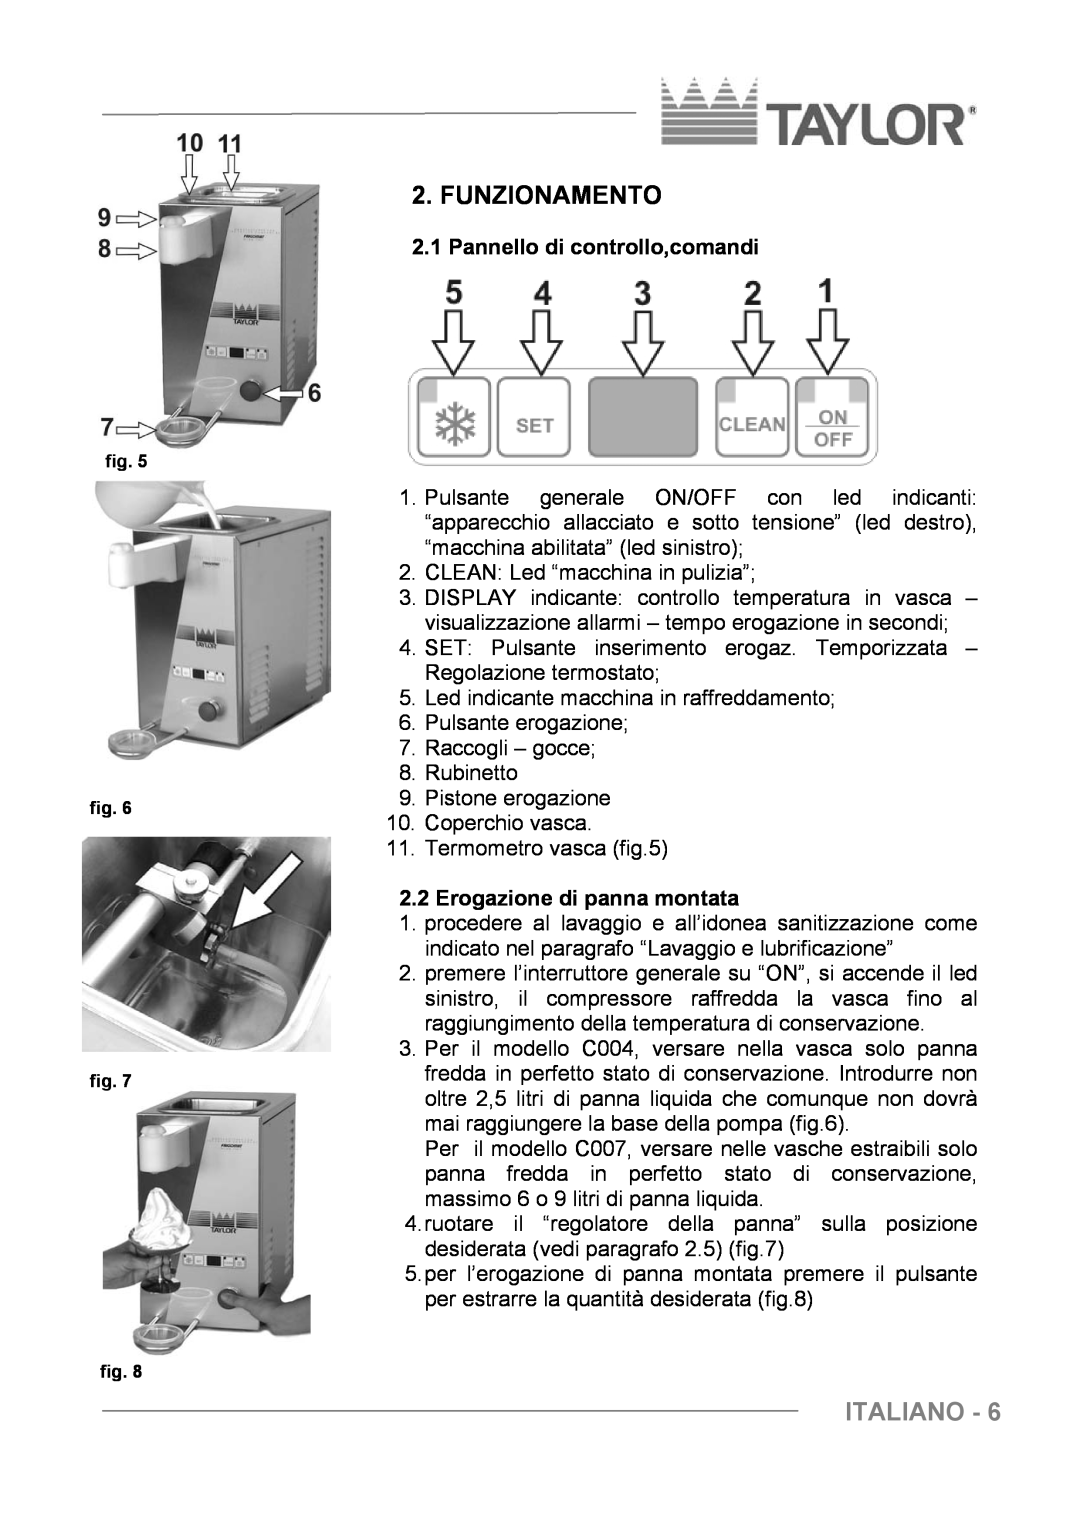 Taylor C004 - C007 manuel dutilisation Funzionamento, Italiano, Pannello di controllo,comandi, Erogazione di panna montata 